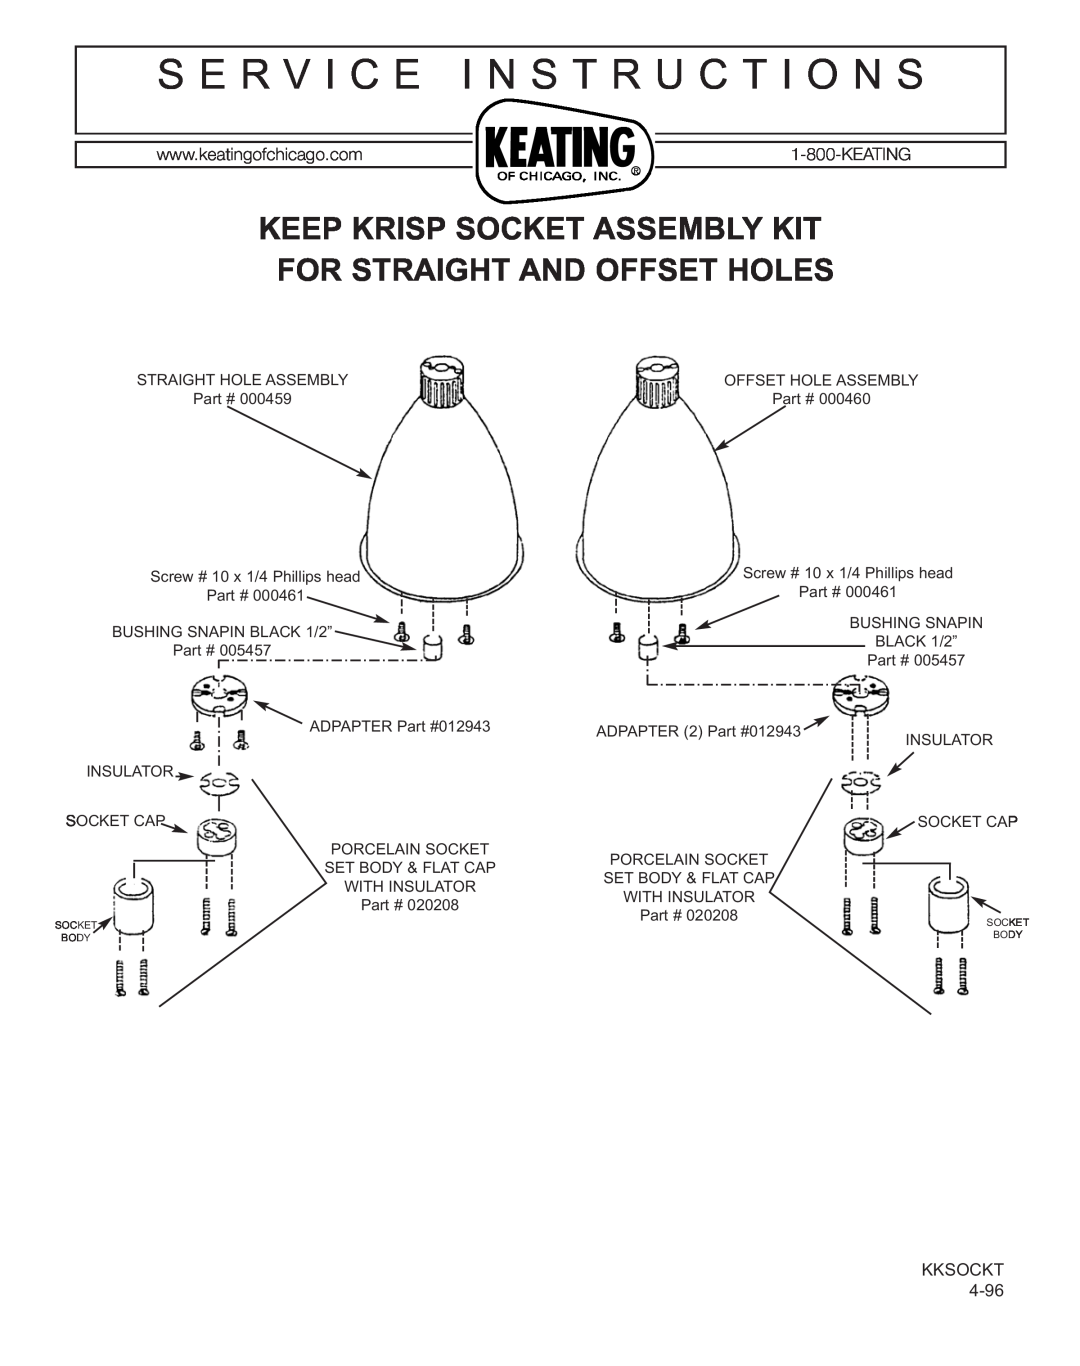 Keating Of Chicago Krisp Socket Assembly Kit For Straight and Offset Holes manual S E R V I C E I N S T R U C T I O N S 